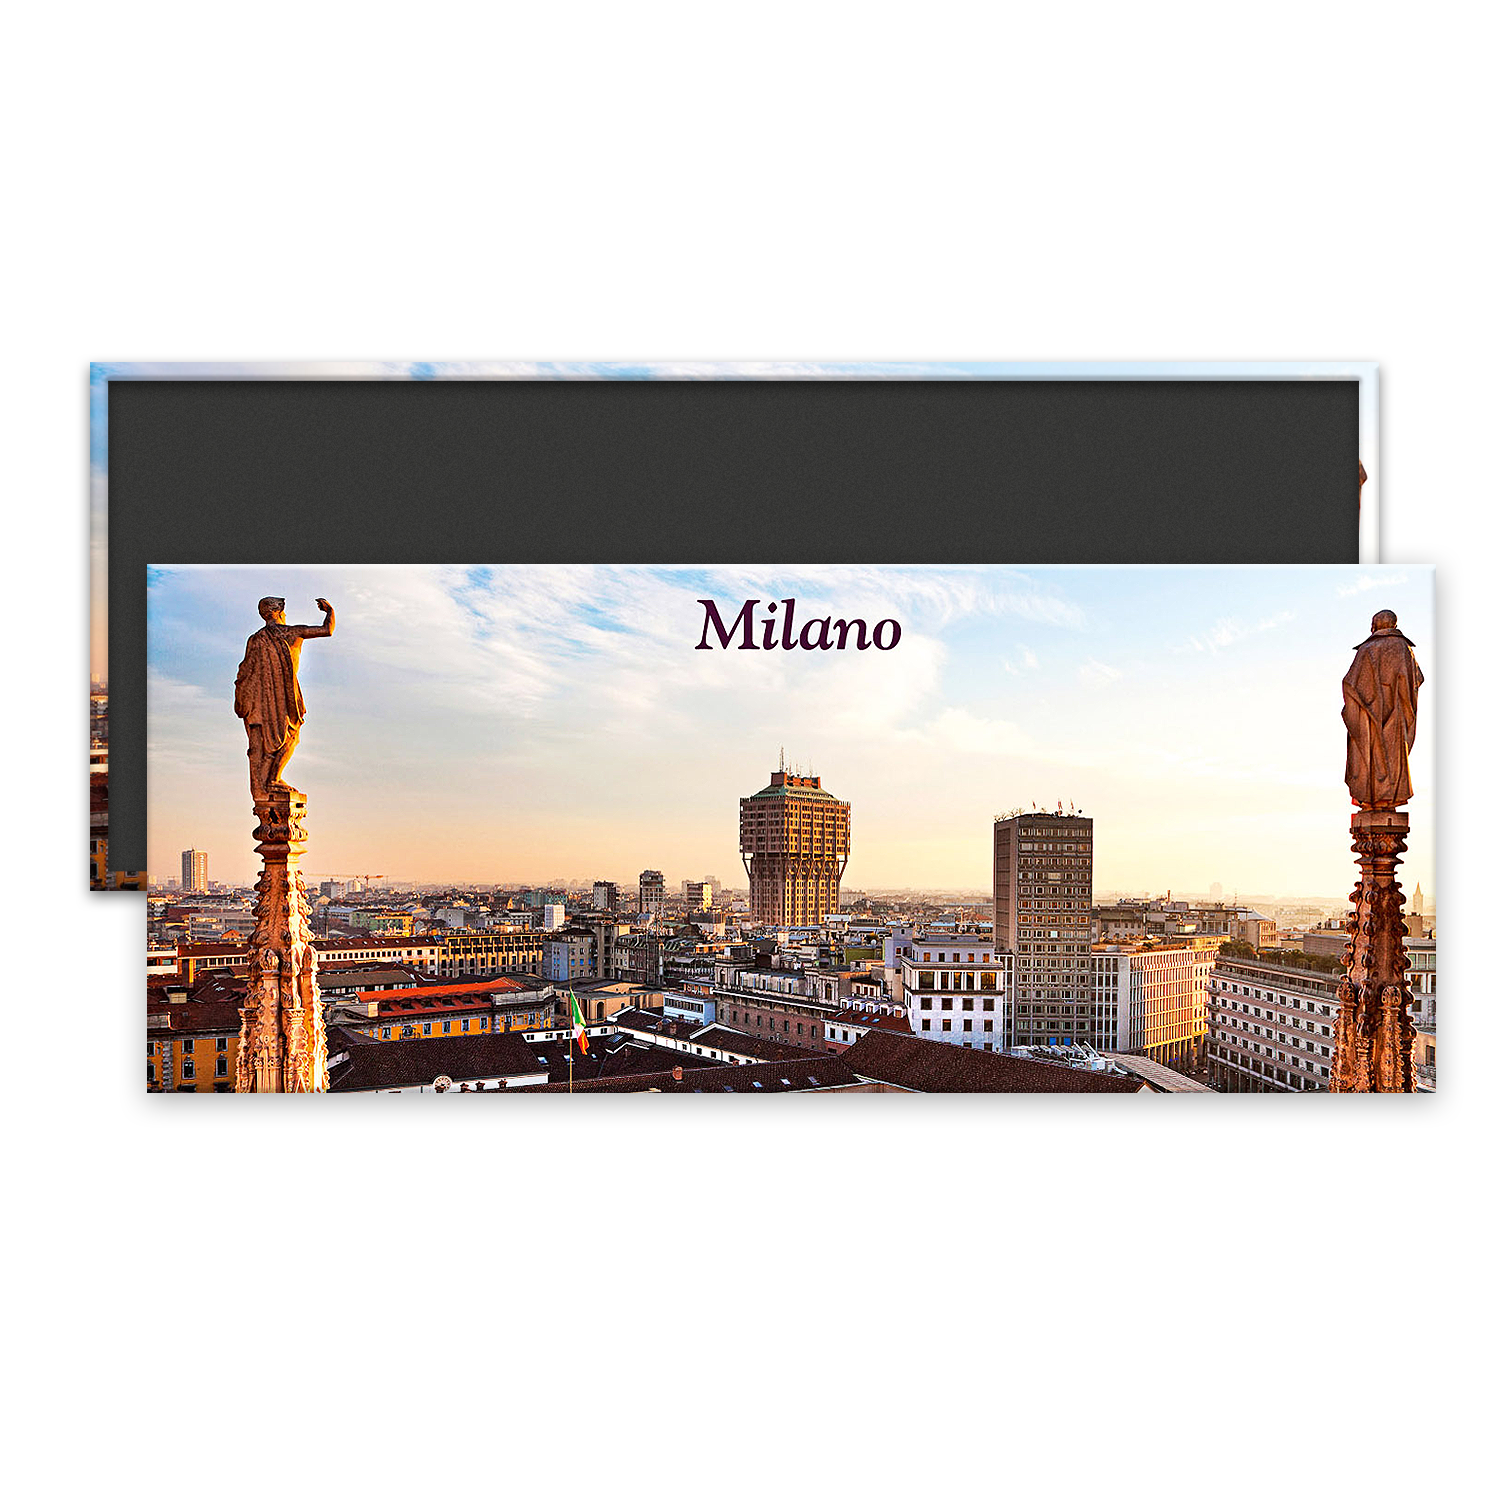 MI M 010 - Milano, Torre Velasca